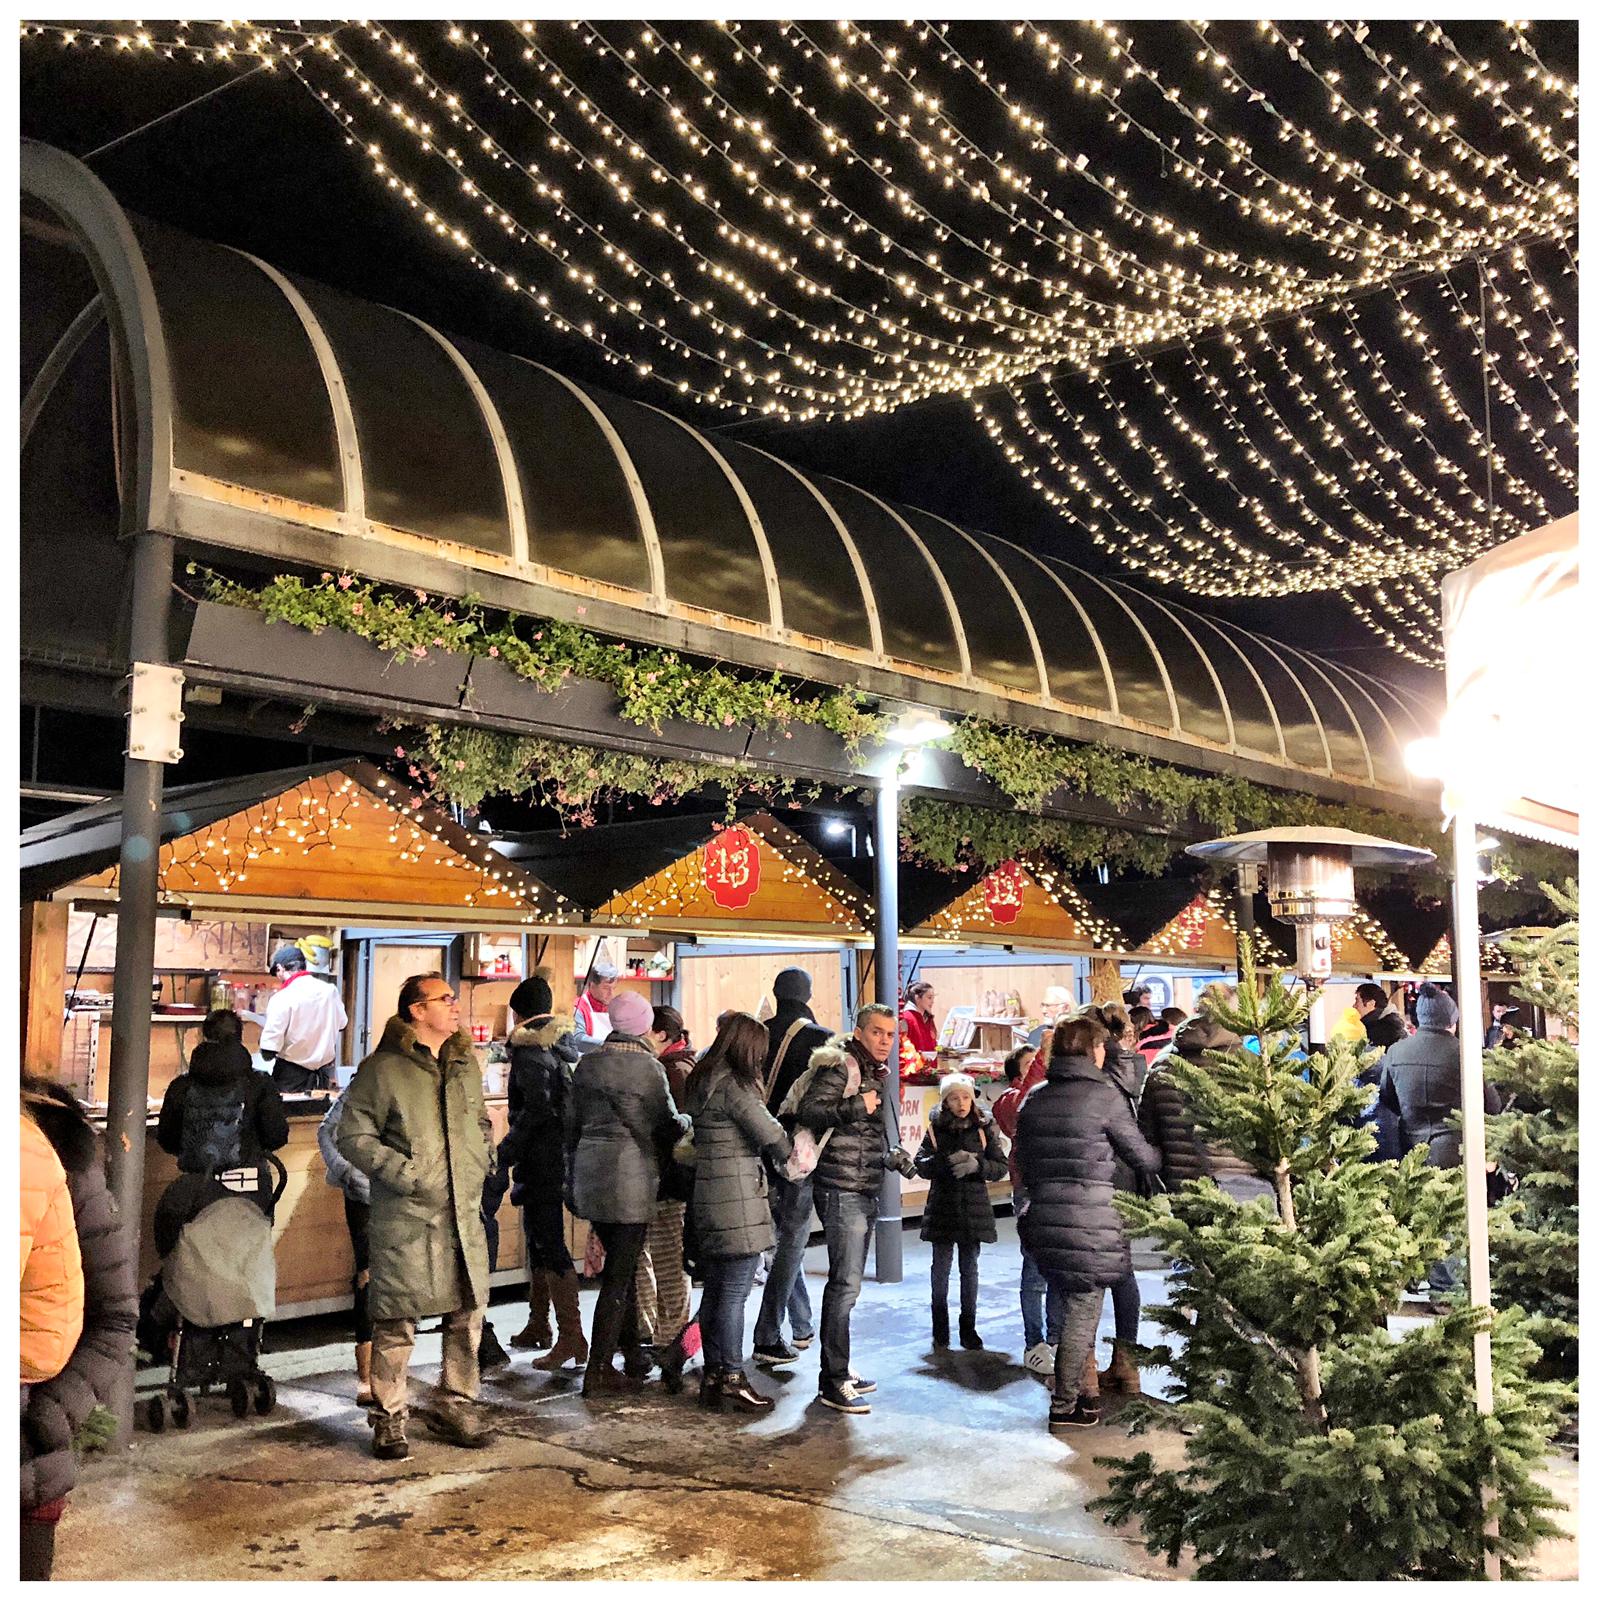 Andorre-la-Vieille a donné le coup d'envoi le 1er décembre ; l'ouverture du marché de Noël, Plaça del Poble, a été précédée d'un spectacle sons et lumières qui sera représenté tous les soirs à 18 h et à 19 h 30 à la place de la Rotonde jusqu'à la fin du mois. Puis c'est le chœur d'enfants des «Petits Cantors d'Andorra» qui a interprété quelques chants de Noël avant le feu d'artifice qui a illuminé et fait résonner et trembler la vallée pendant plus d'un quart d'heure. De nombreuses activités sont destinées aux enfants comme la patinoire et le toboggan synthétiques. Le programme complet se trouve en français sur https ://www.andorralavella.ad/noel/inici-noel. Après l'arrivée du Père Noël le 24 décembre à 18 h, les festivités se termineront par la grande cavalcade des Rois Mages entre Escaldes et Andorre la Vieille le 5 janvier à partir de 18 h 30. Bien sûr, les autres communes ne sont pas en reste et elles proposent toutes de quoi satisfaire les nombreux touristes qui vont déferler sur la Principauté pendant les fêtes et cela commence cette fin de semaine avec l'arrivée attendue de nombreux Espagnols qui fêteront la Purissima dès jeudi.